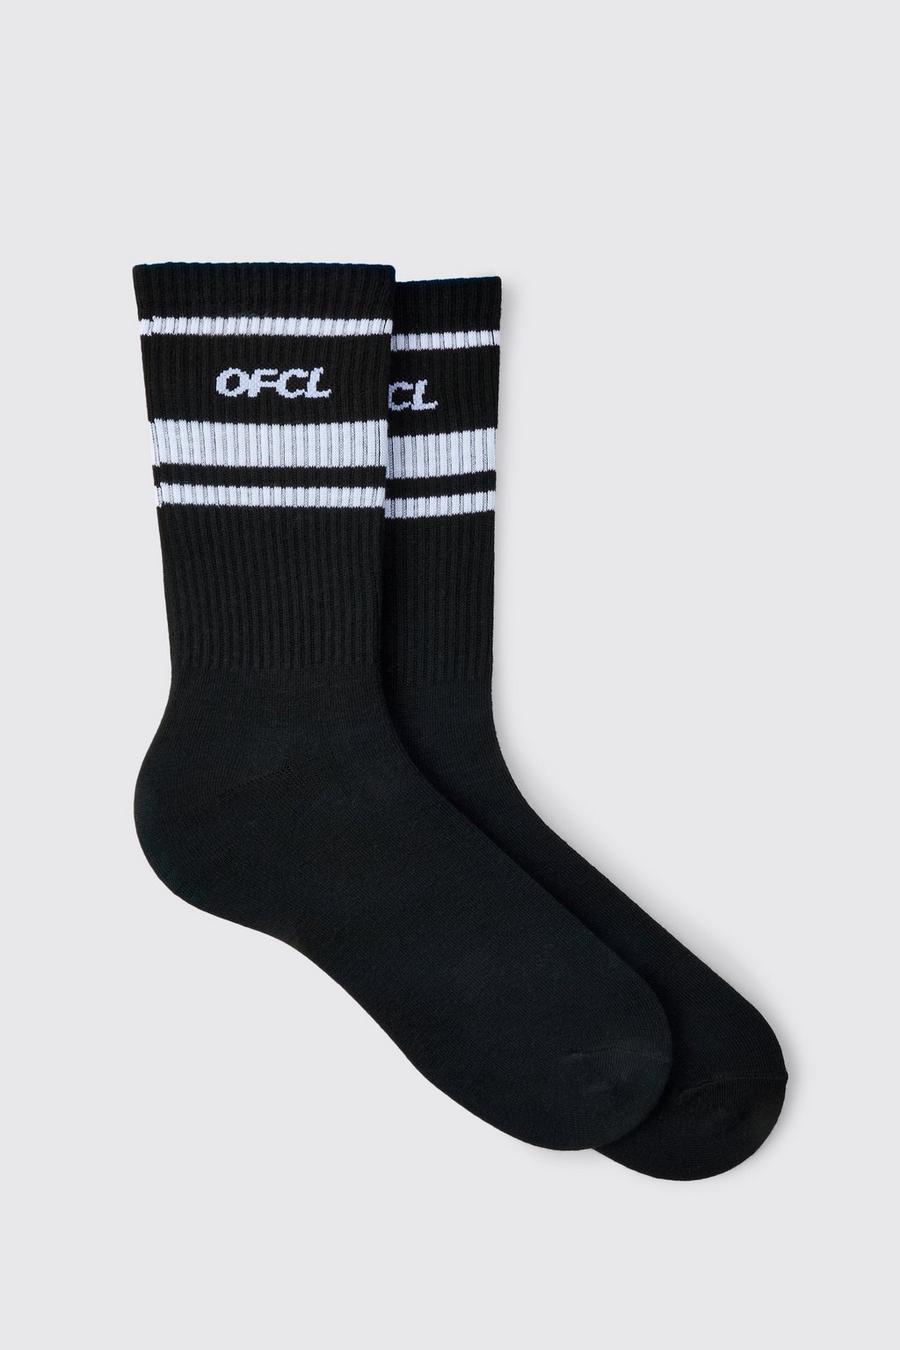 Black Ofcl Sports Stripe Socks image number 1